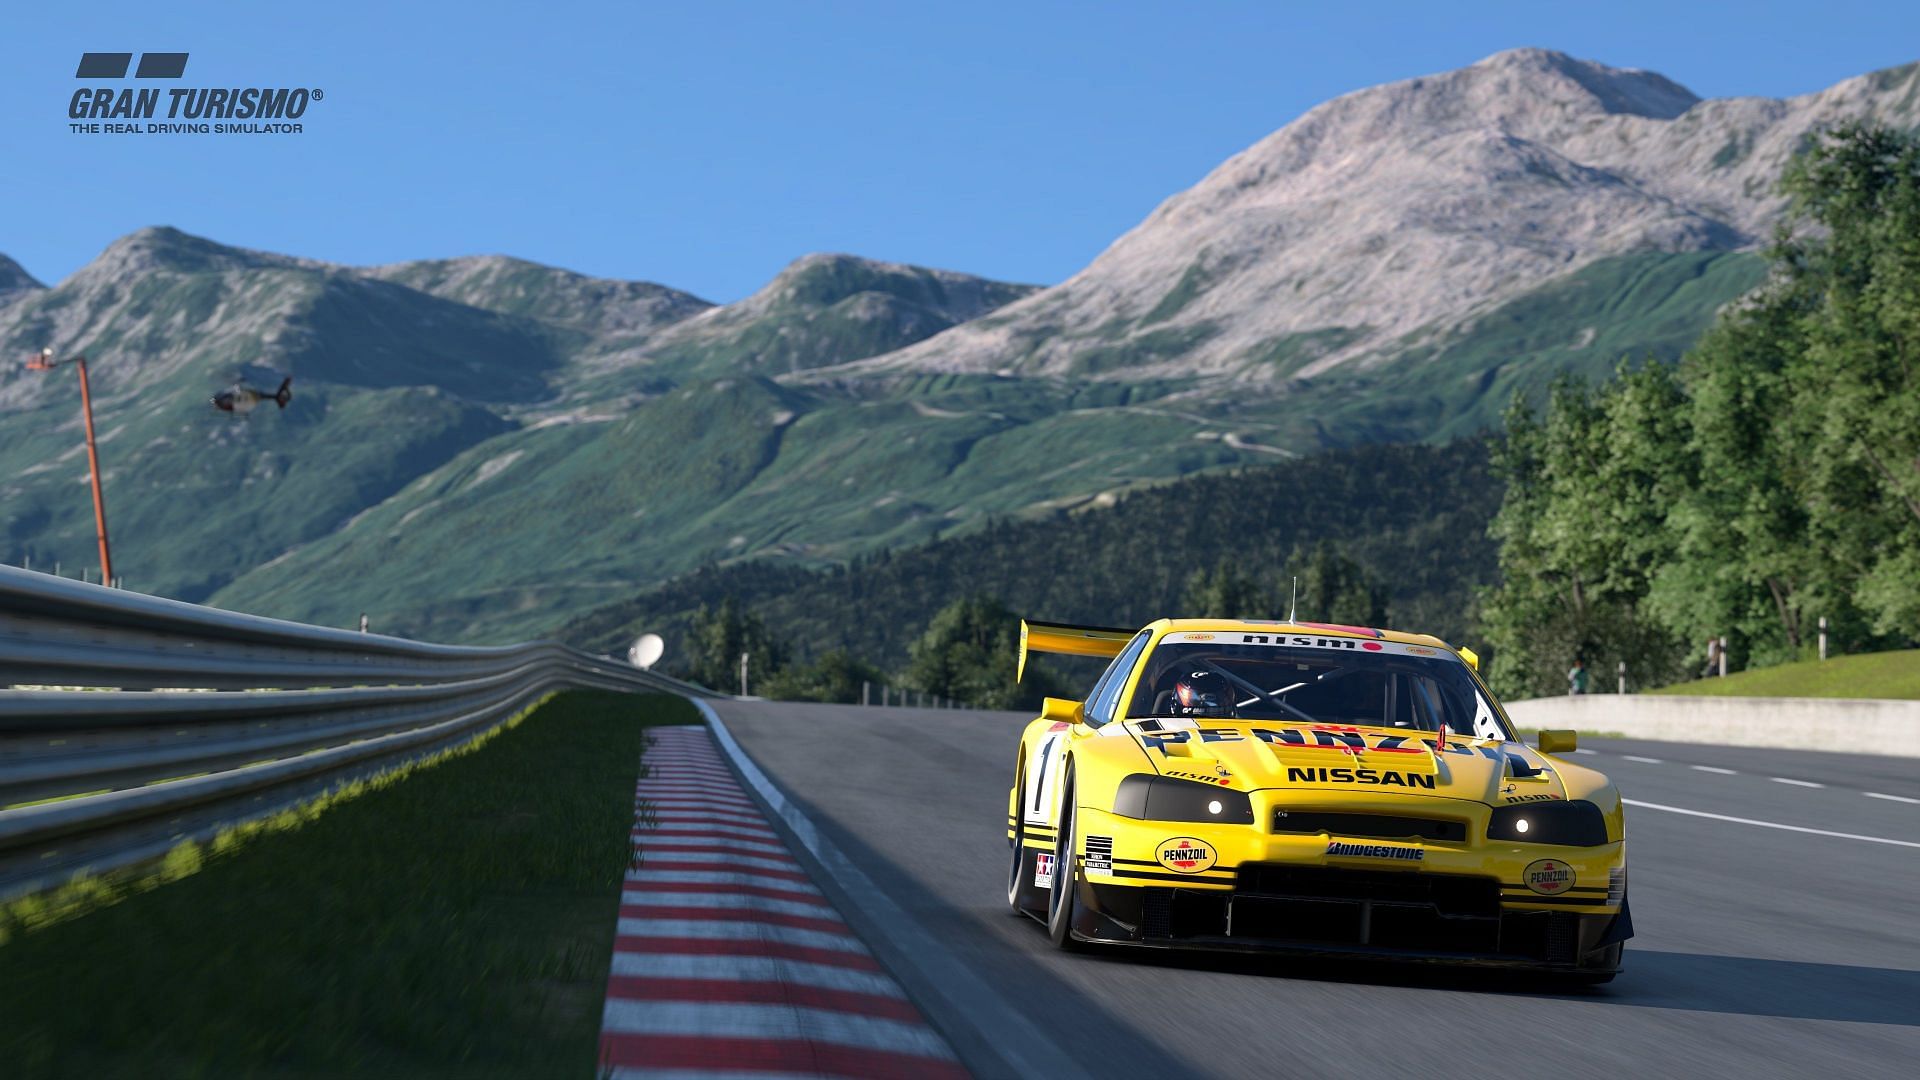 Forza Motorsport vs Gran Turismo 7 - Xbox Series X vs PS5 - Graphics  Comparison - Performance Test 